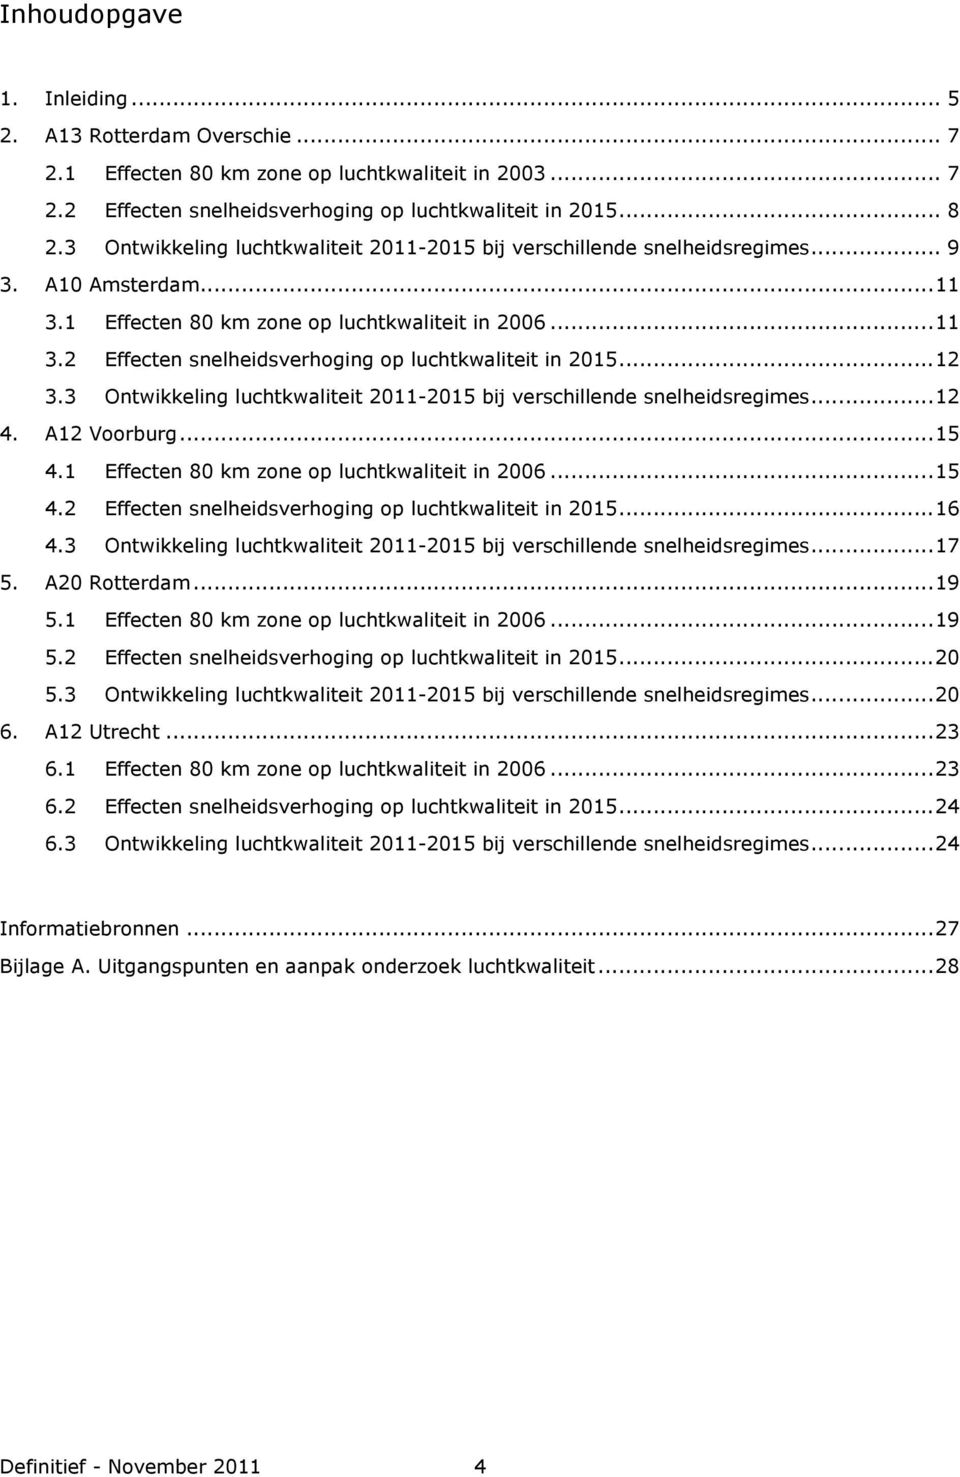 ..12 3.3 Ontwikkeling luchtkwaliteit 2011-2015 bij verschillende snelheidsregimes...12 4. A12 Voorburg...15 4.1 Effecten 80 km zone op luchtkwaliteit in 2006...15 4.2 Effecten snelheidsverhoging op luchtkwaliteit in 2015.